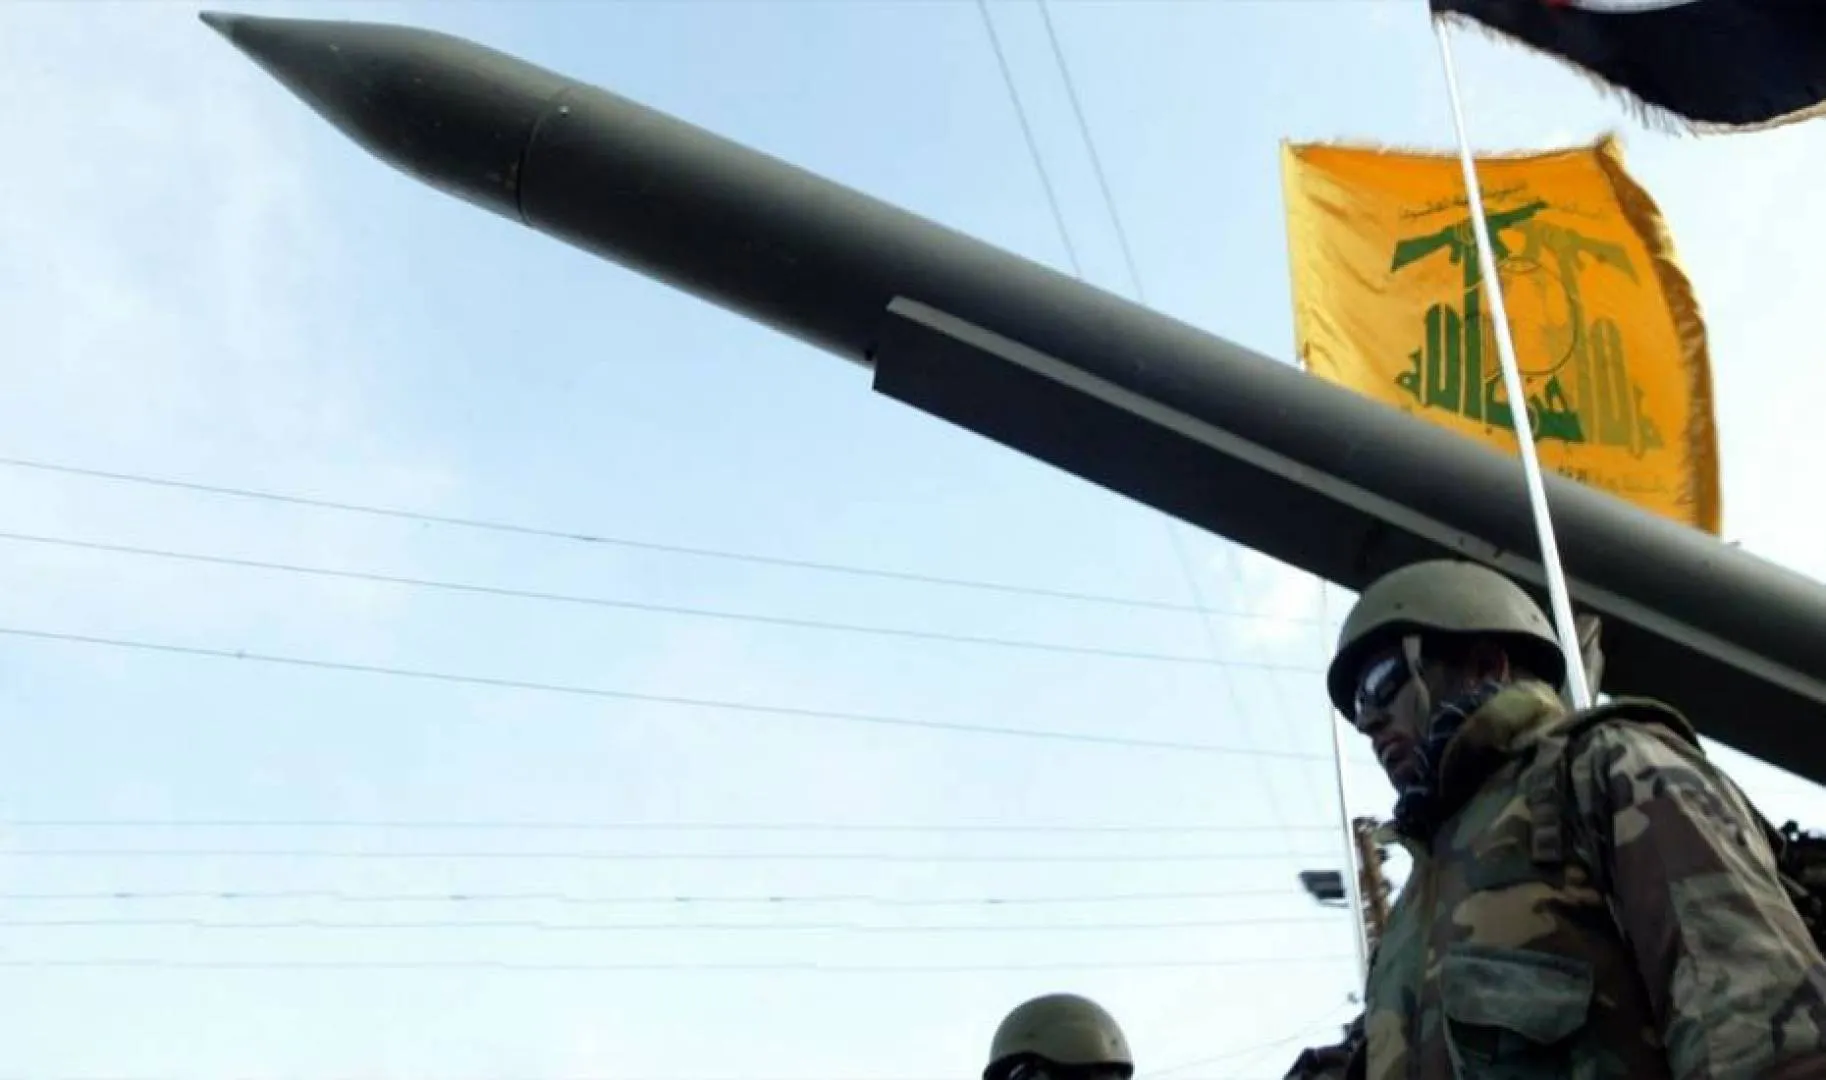 الجيش الإسرائيلي يكشف مسار نقل أسلحة من إيران إلى "حزب الله" يديره صهر "سليماني"